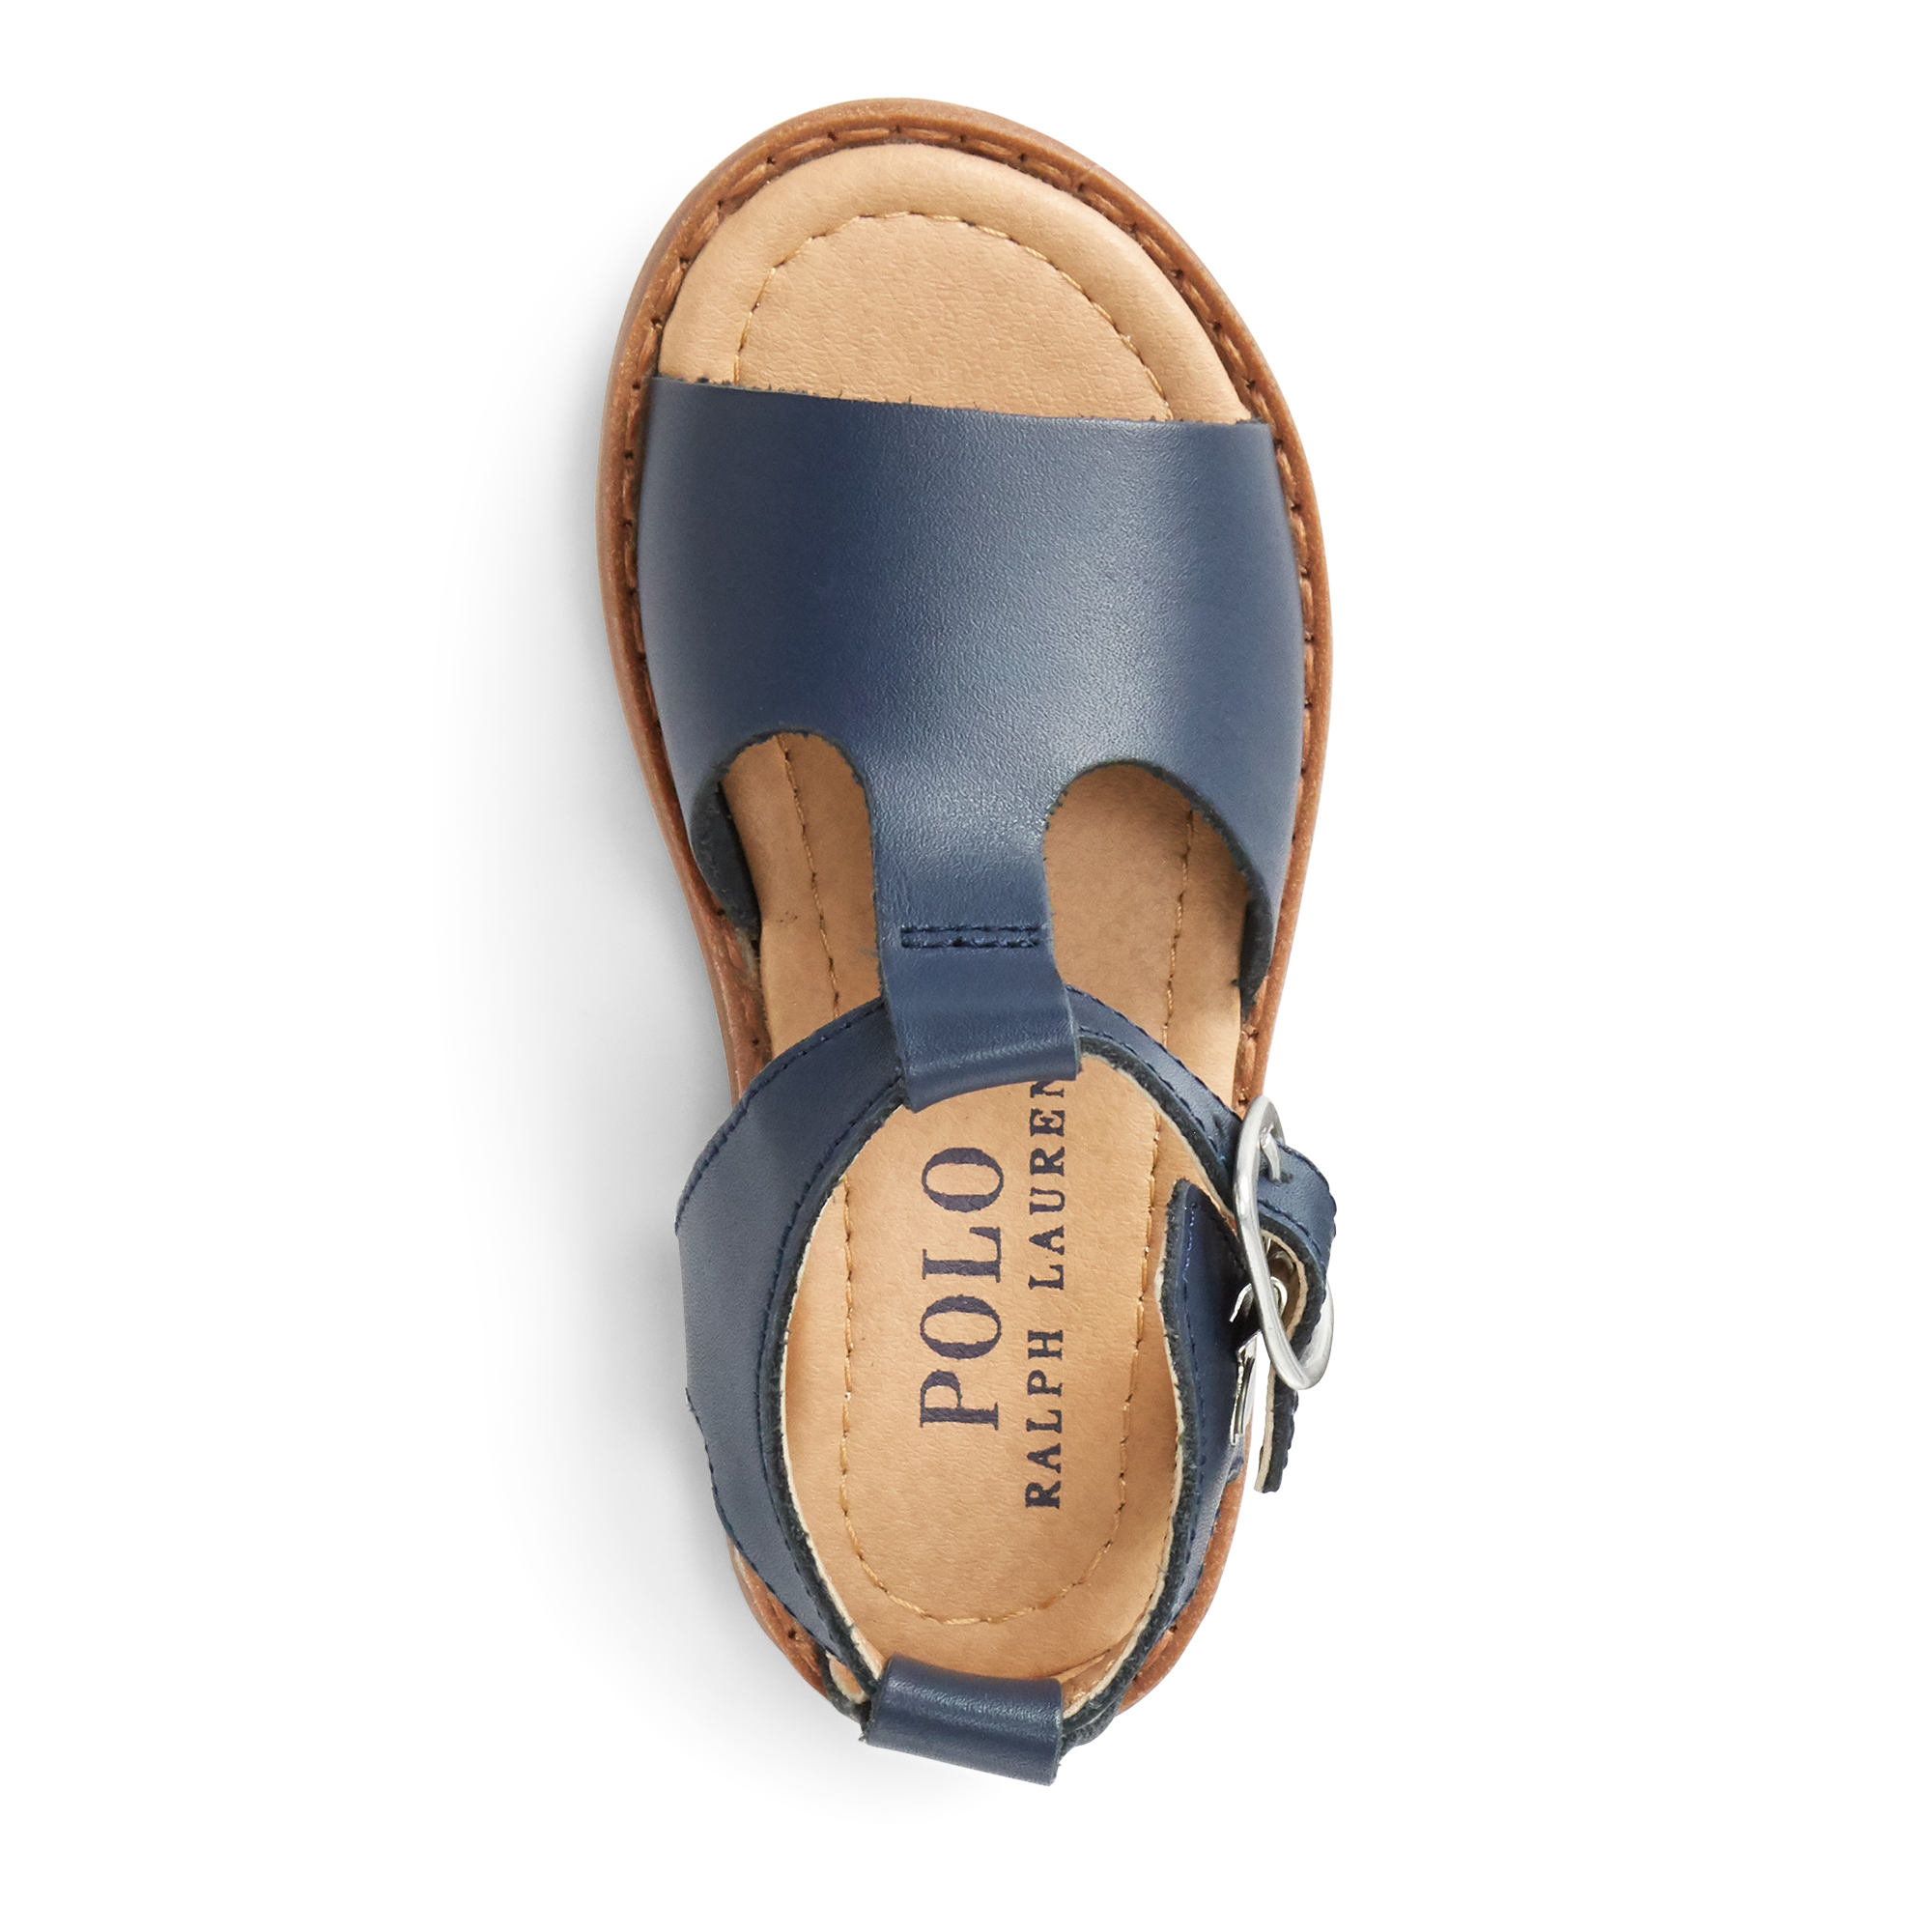 Ralph Lauren Kittredge Leather Sandal. 4